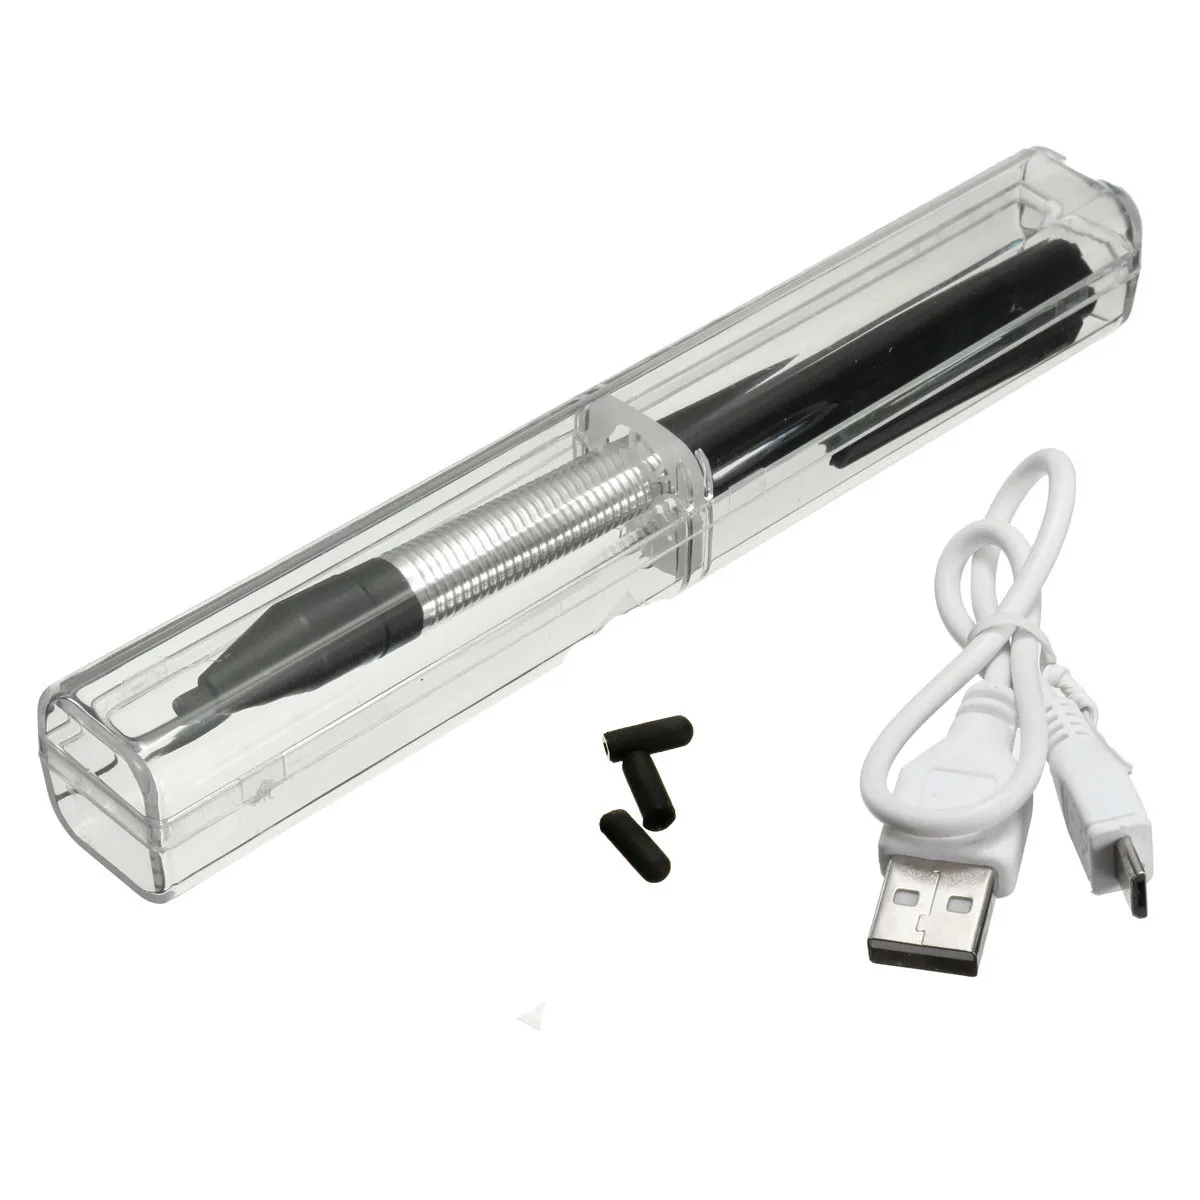 Универсальный стилус для мобильного телефона из алюминиевого сплава 2,4 мм высокоточная активная емкостная ручка карандаш для рисования для iPad Android планшета